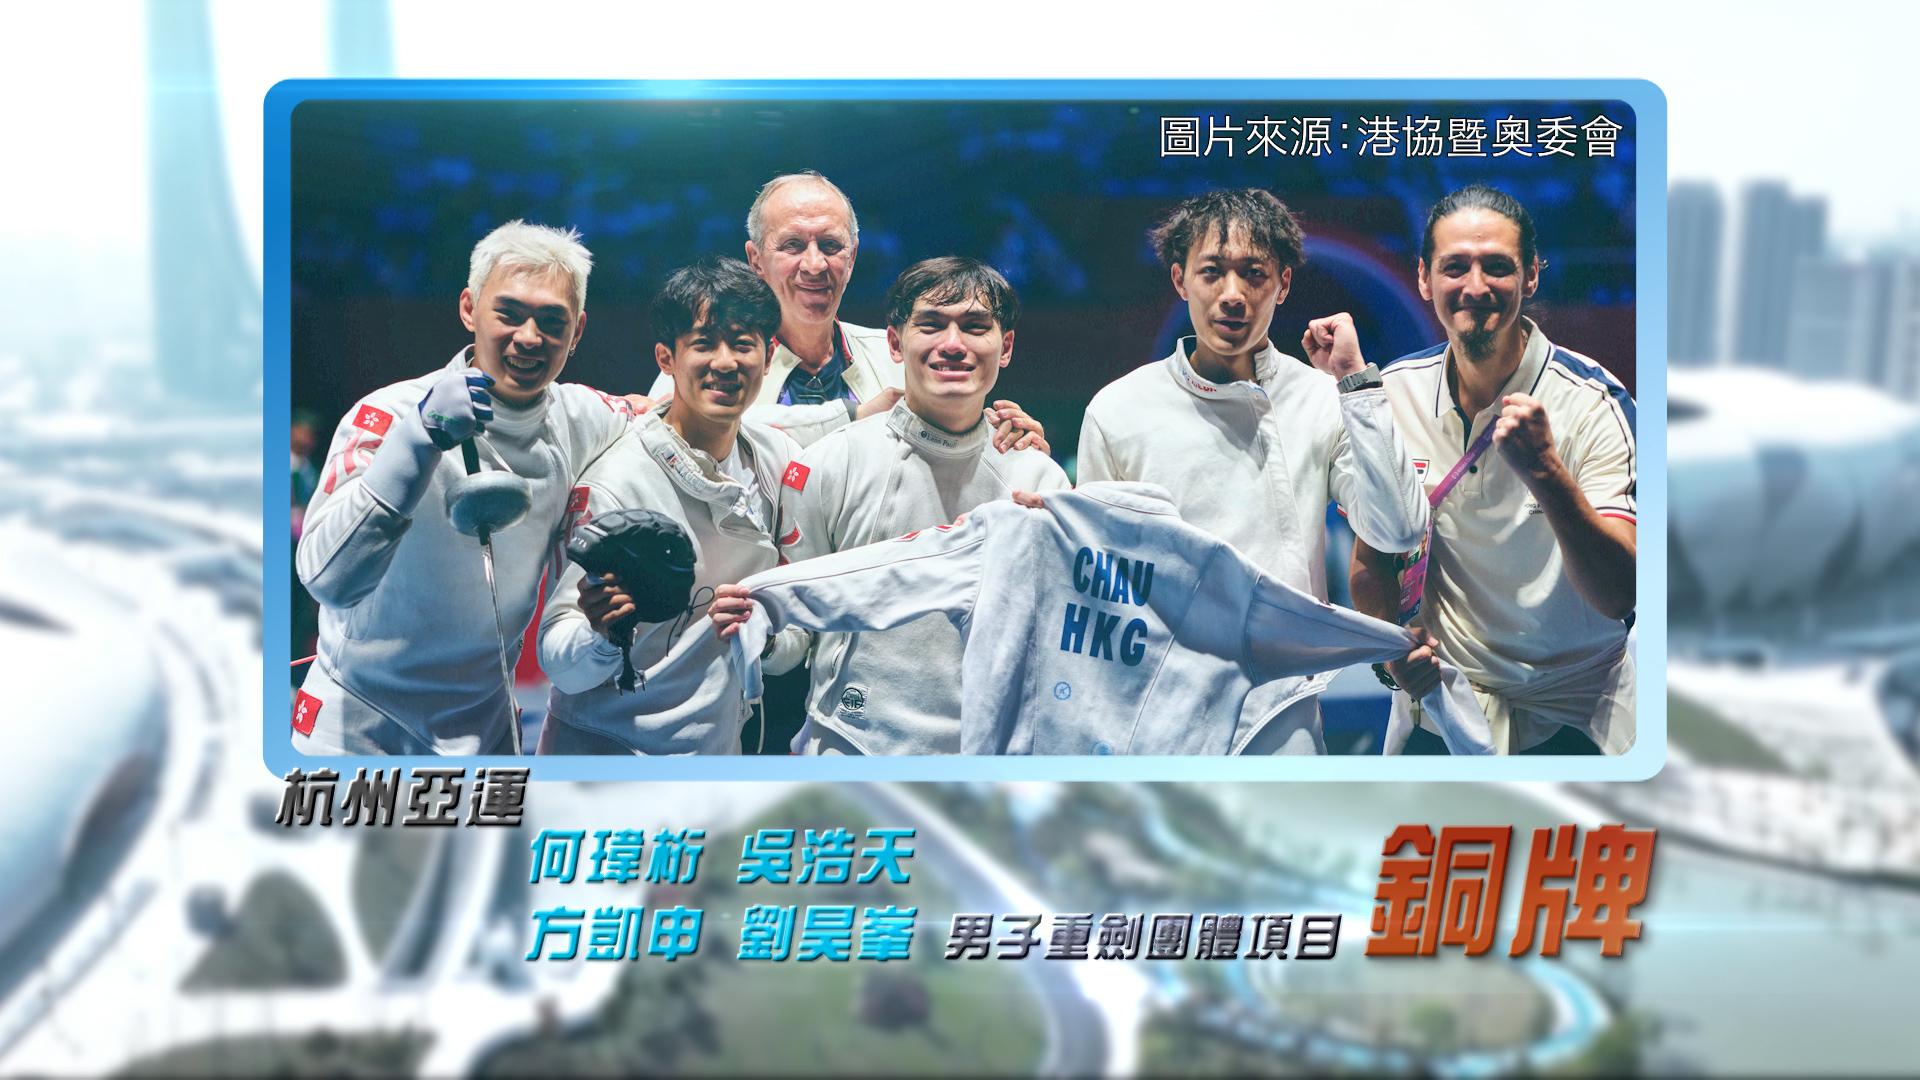 恭喜何玮桁、吴浩天、方凯申、刘昊峯于杭州亚运男子重剑团体赛夺铜